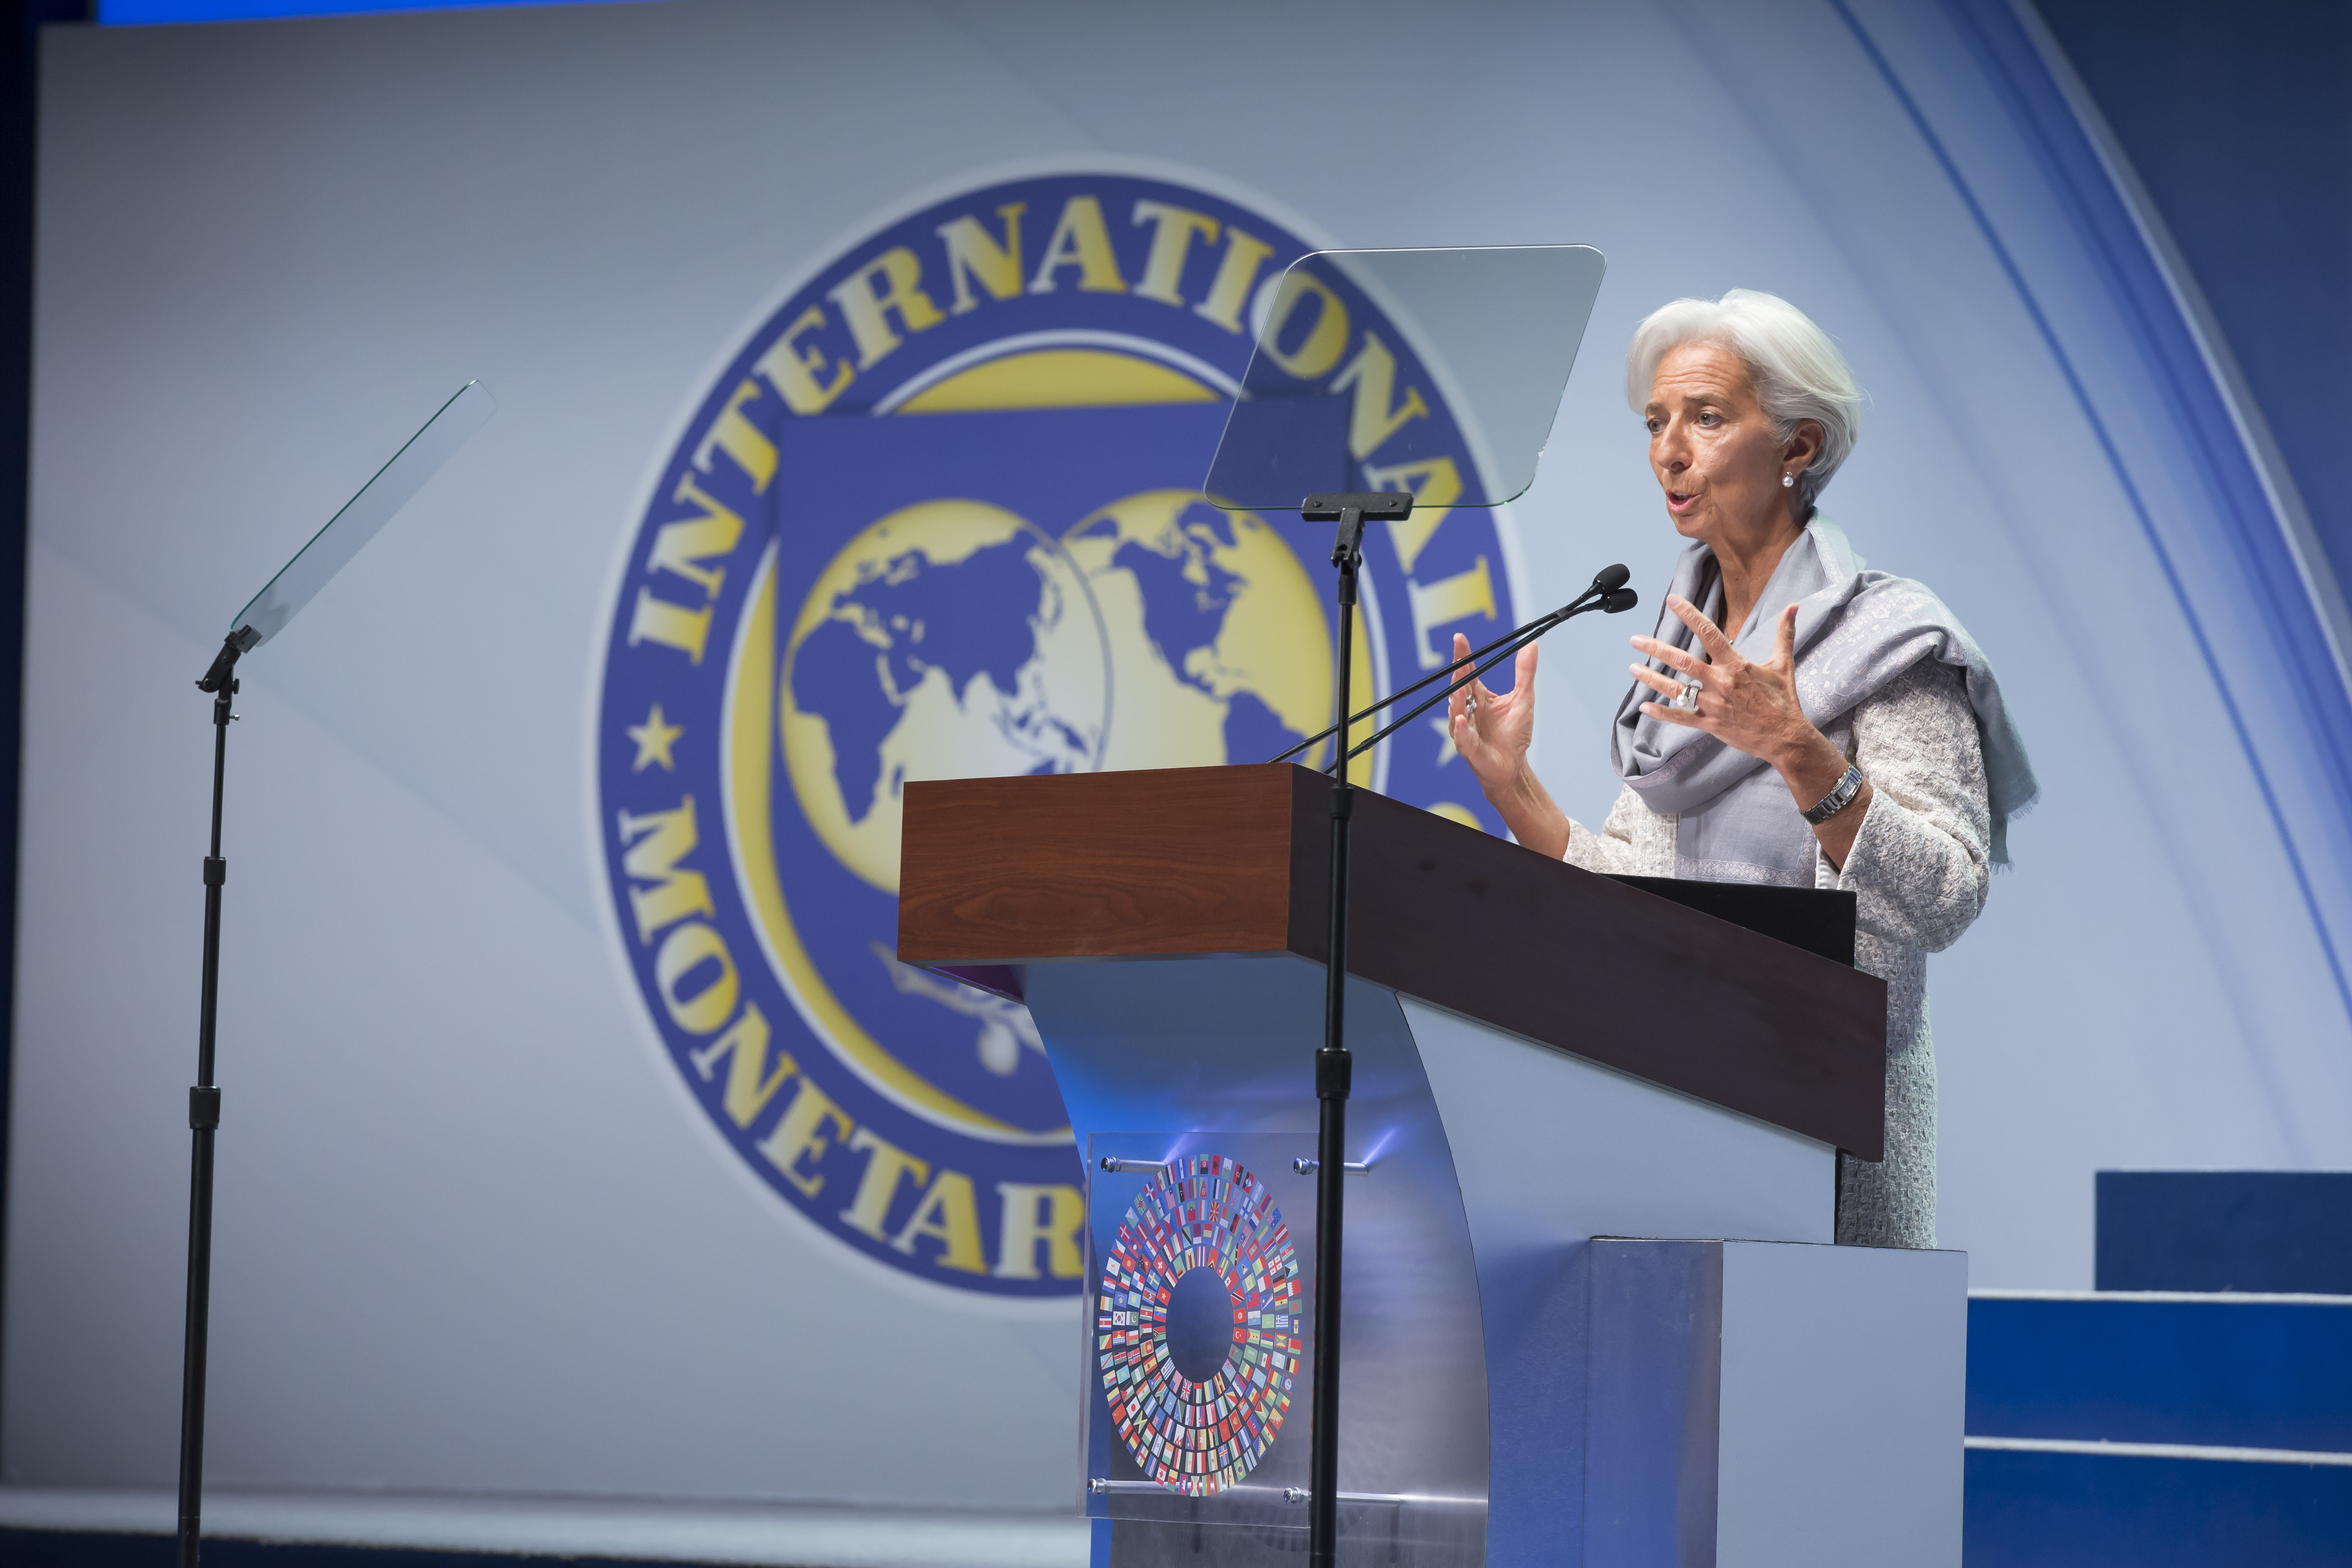 Деятельность мвф. Международный валютный фонд (МВФ). МВФ Вашингтон. Кристин Лагард сотрудники МВФ. Международный валютный фонд штаб квартира.